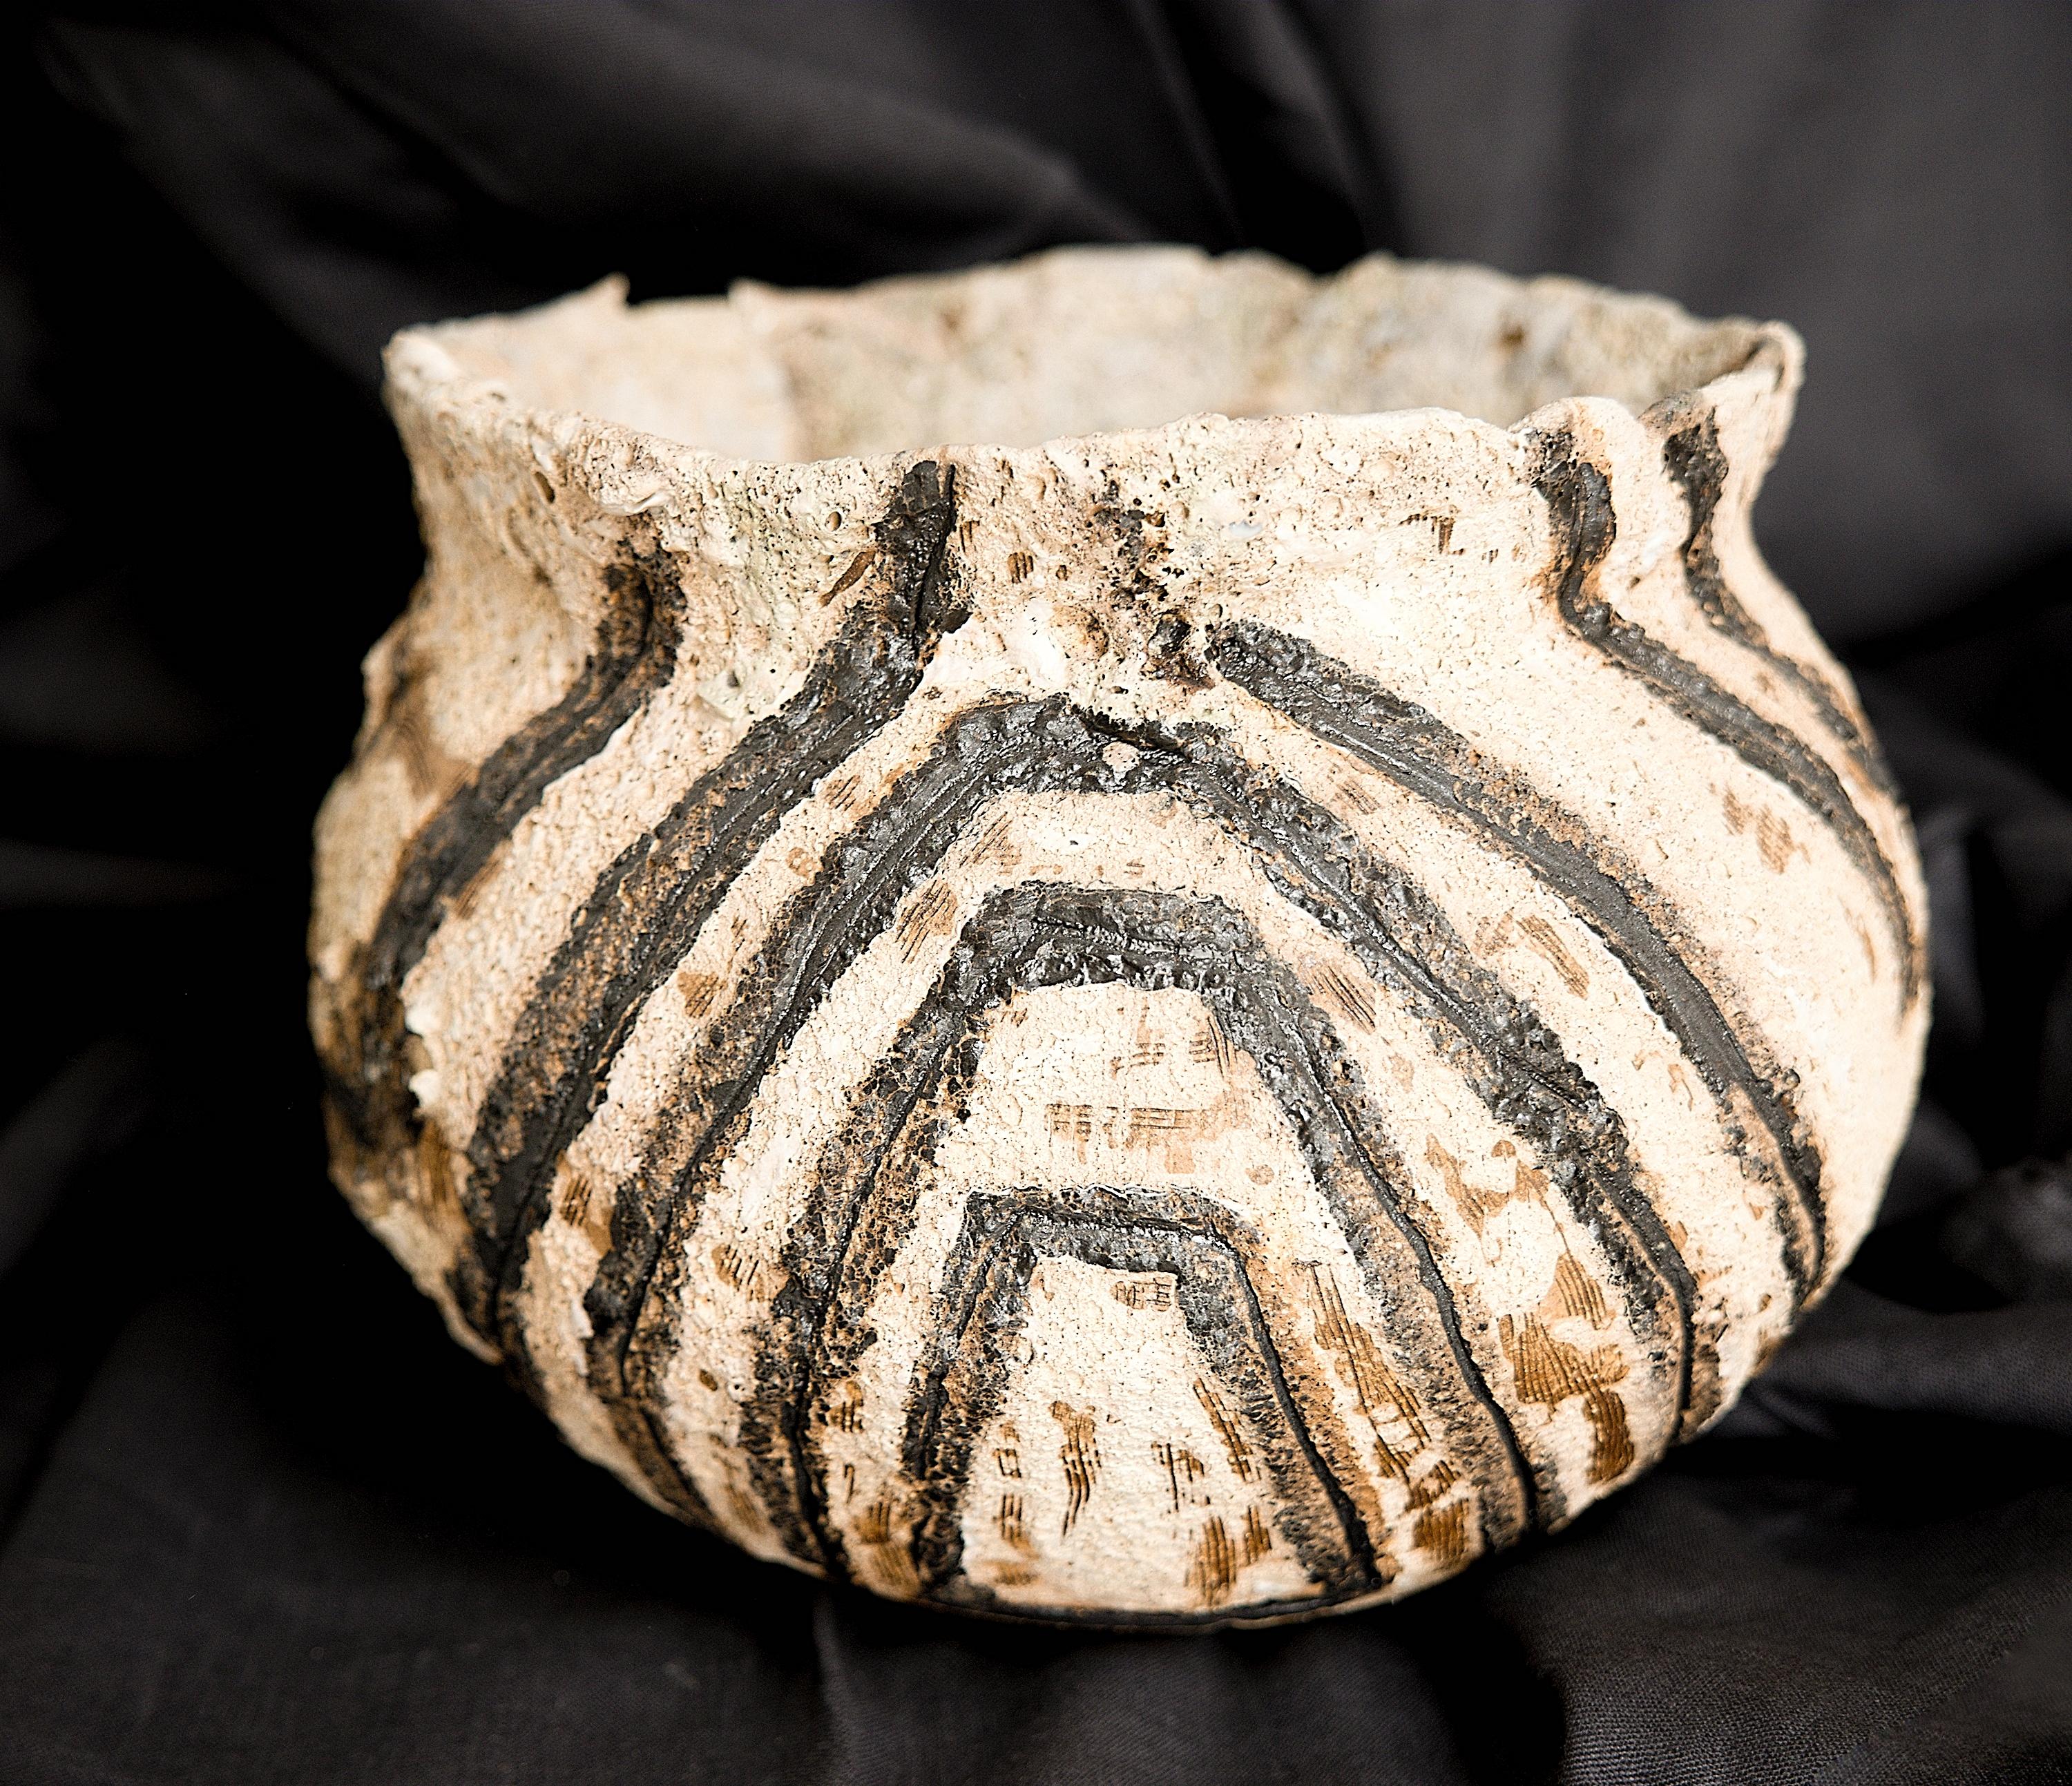 Diese Serie ist von der alten Jomon, japanischen und Mehrgarh-Keramik inspiriert; 

Oft werden die bekannten Yakishime-Techniken verwendet, bei denen der Ton nicht glasiert wird.

Die Oberflächen sind handbemalt und einzigartig mit individuellen